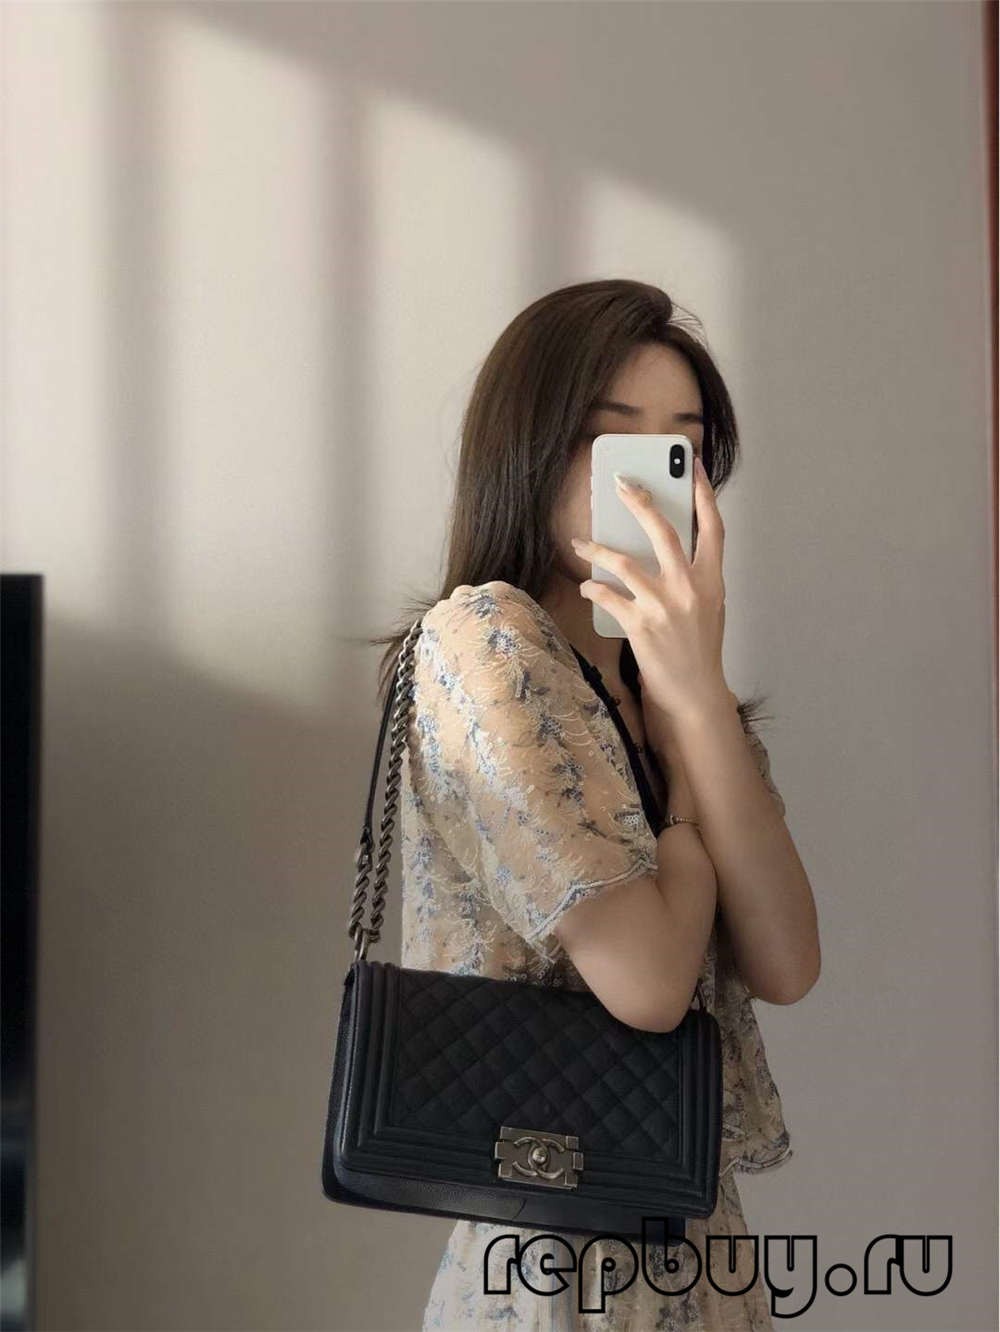 Chanel Leboy Medium Black Top Replica Handbag Use Effect (2022 Latest)-Best Quality Fake designer Bag Review, Replica designer bag ru